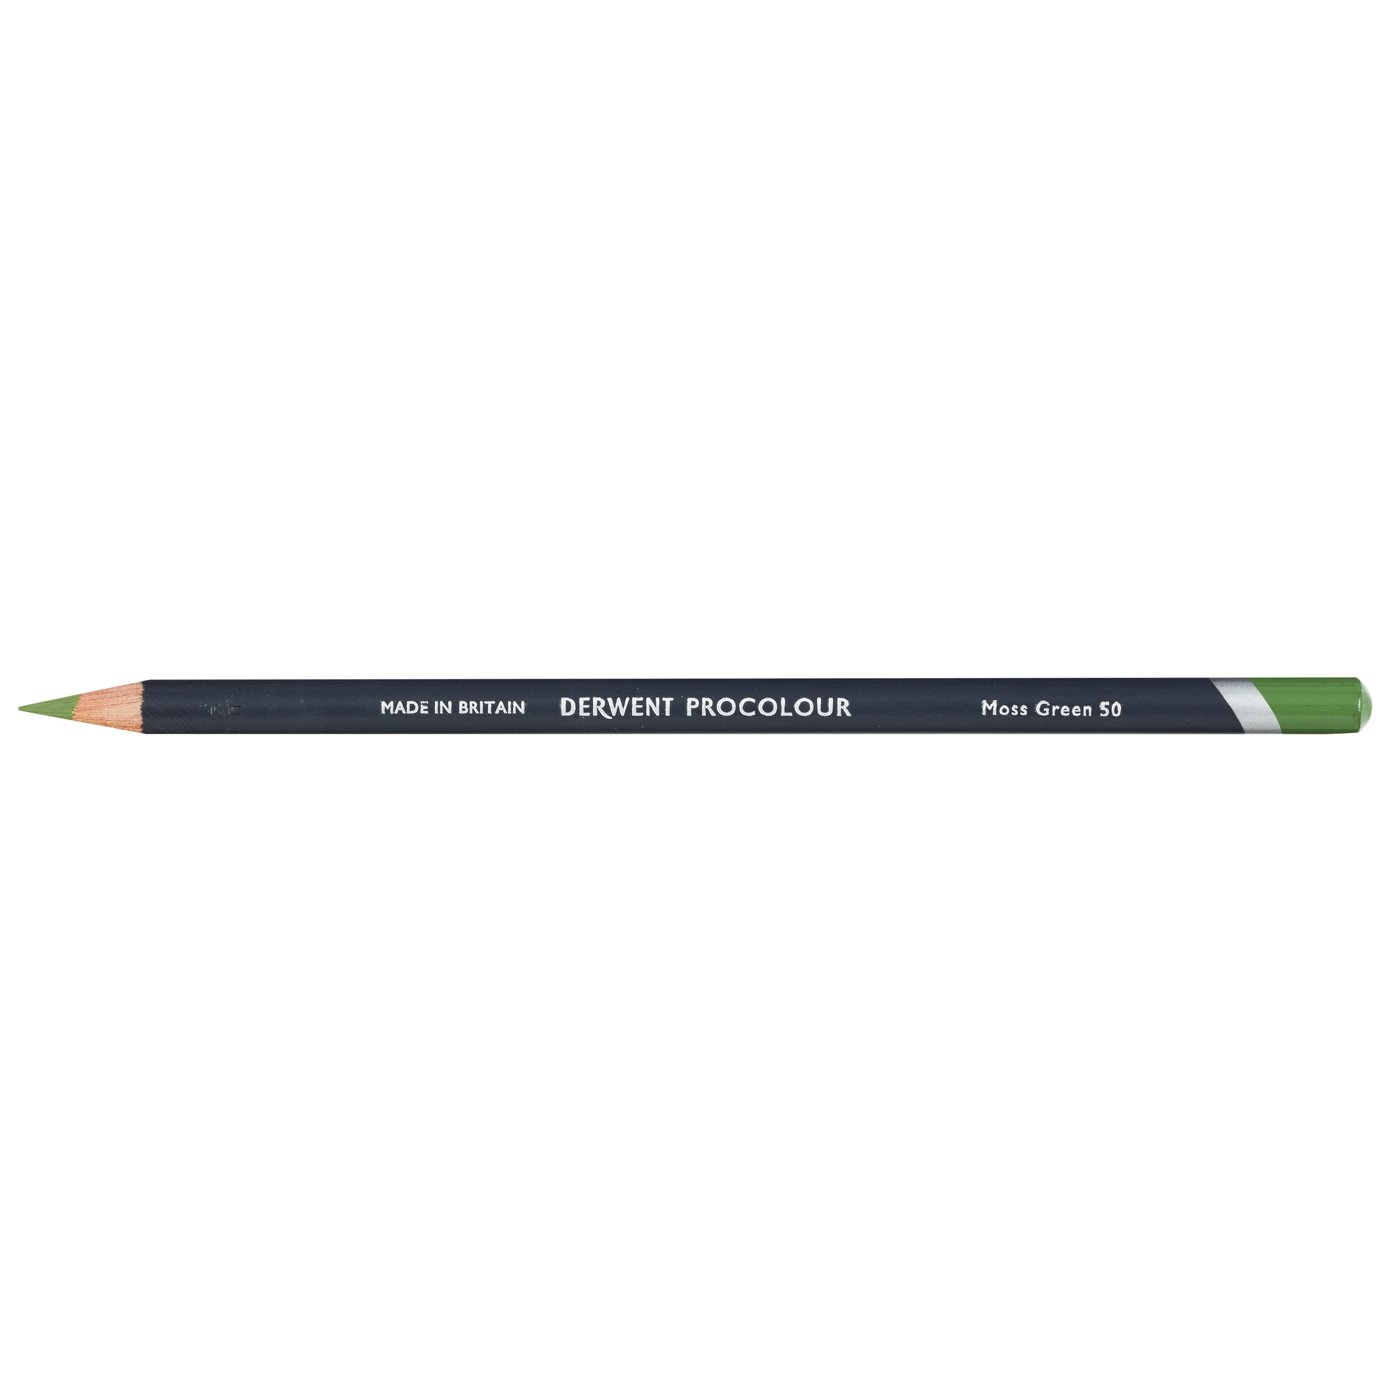 Derwent Procolour Pencil - 50 Moss Green